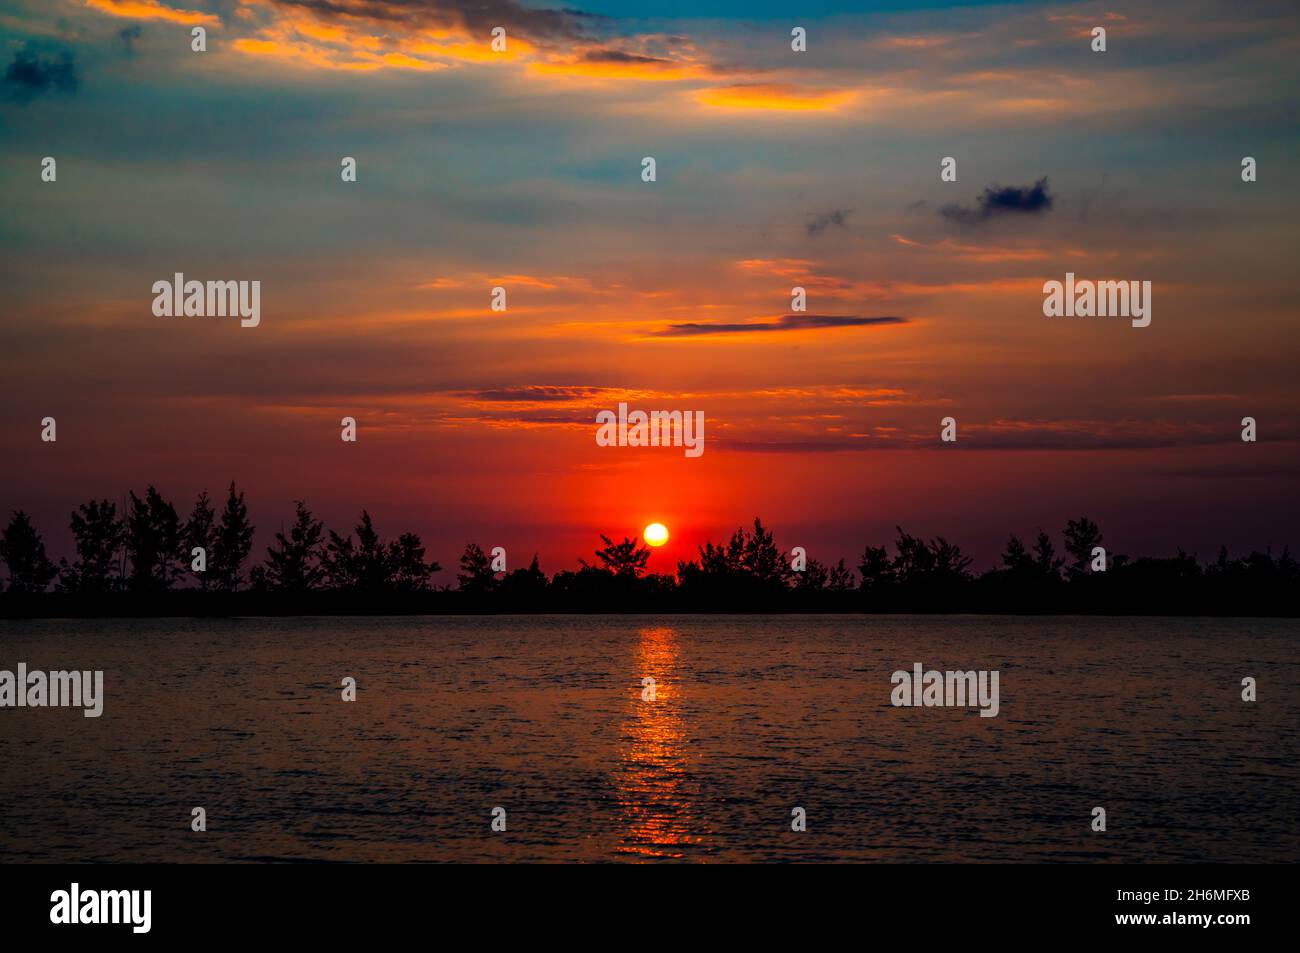 Amazing Sunset at Landingan, Sta Cruz, Zambales Stock Photo